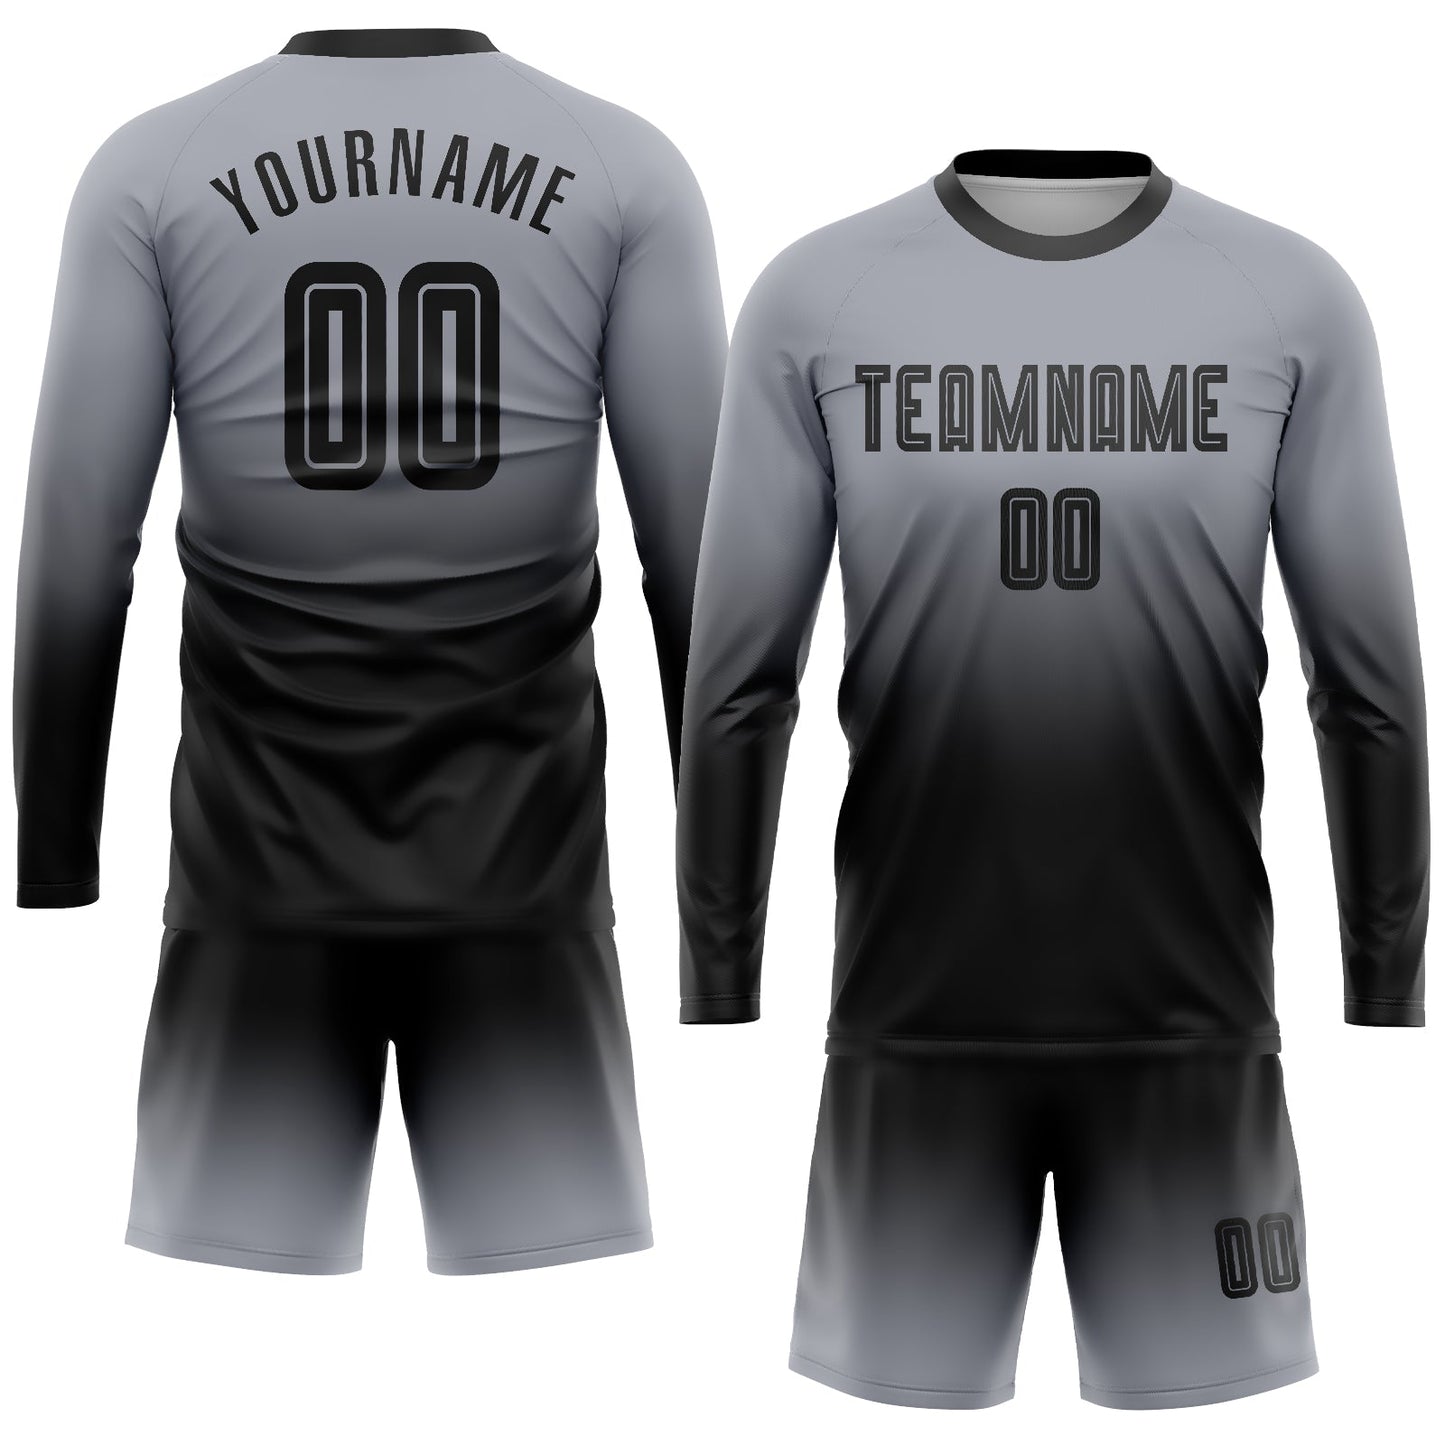 Maillot d'uniforme de football à manches longues, personnalisé, gris et noir, fondu, à la mode, par Sublimation